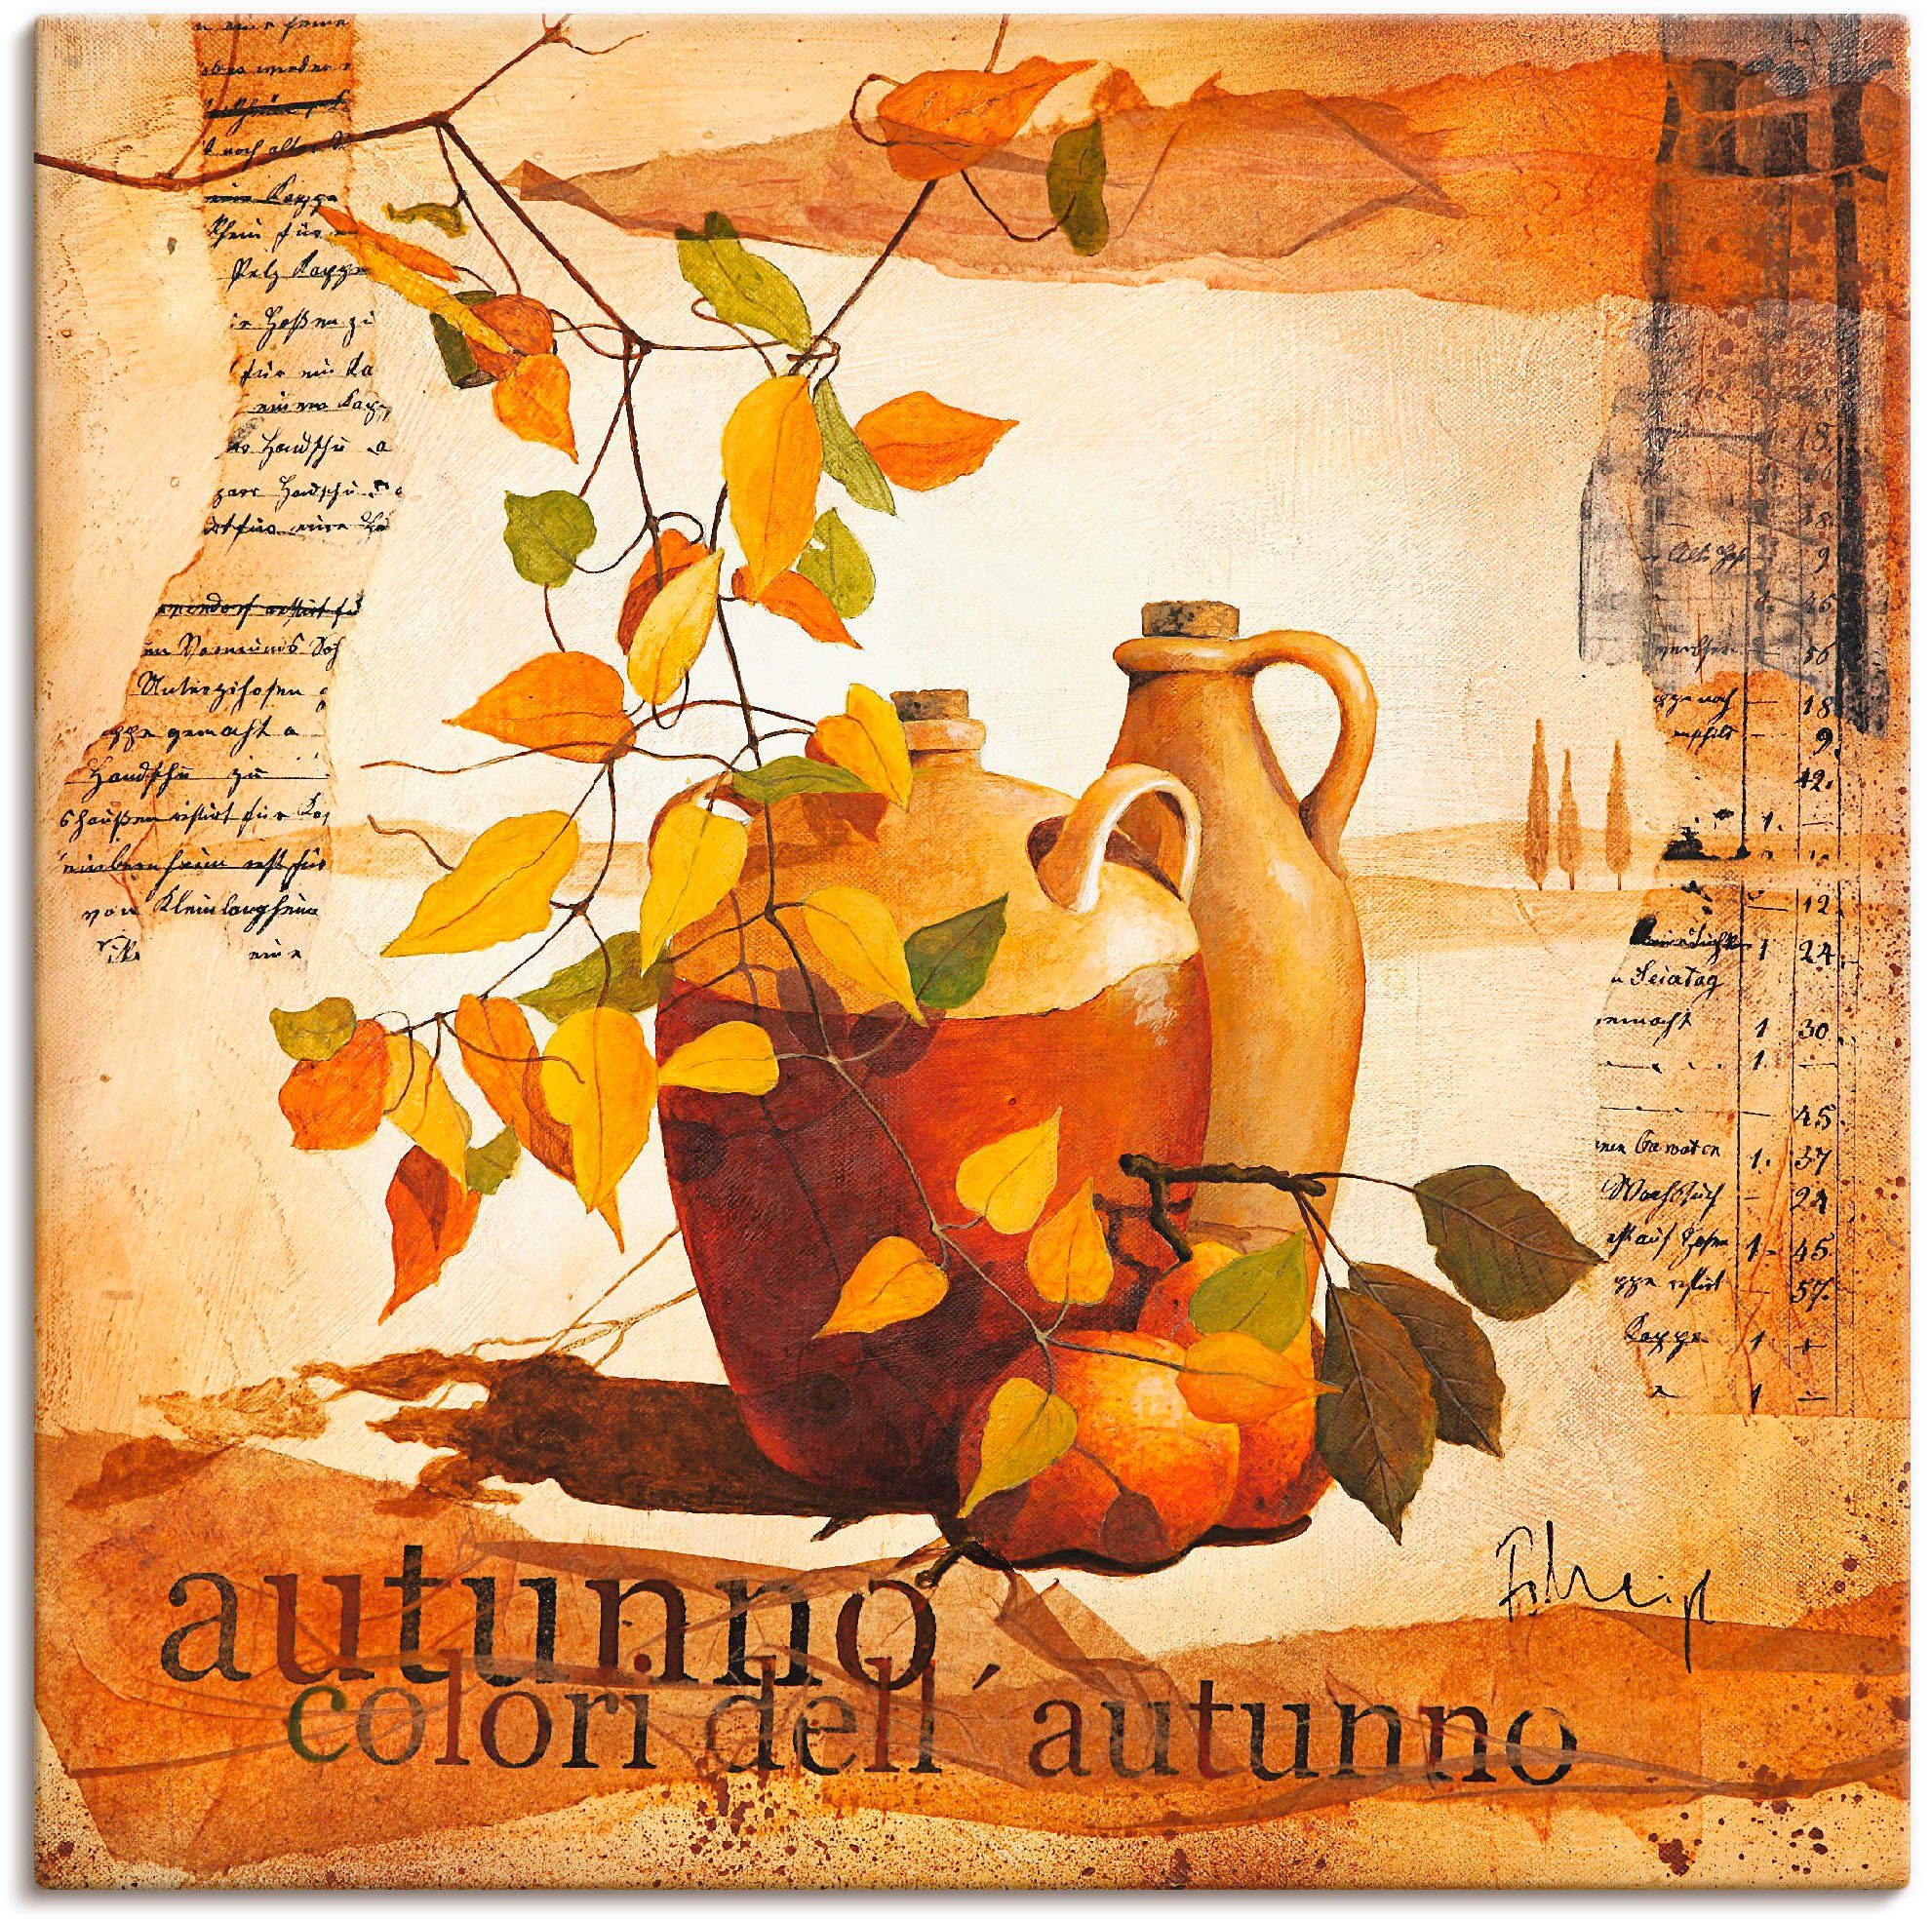 Artland Artprint Italiaanse herfstbladeren in vele afmetingen & productsoorten -artprint op linnen, poster, muursticker / wandfolie ook geschikt voor de badkamer (1 stuk)